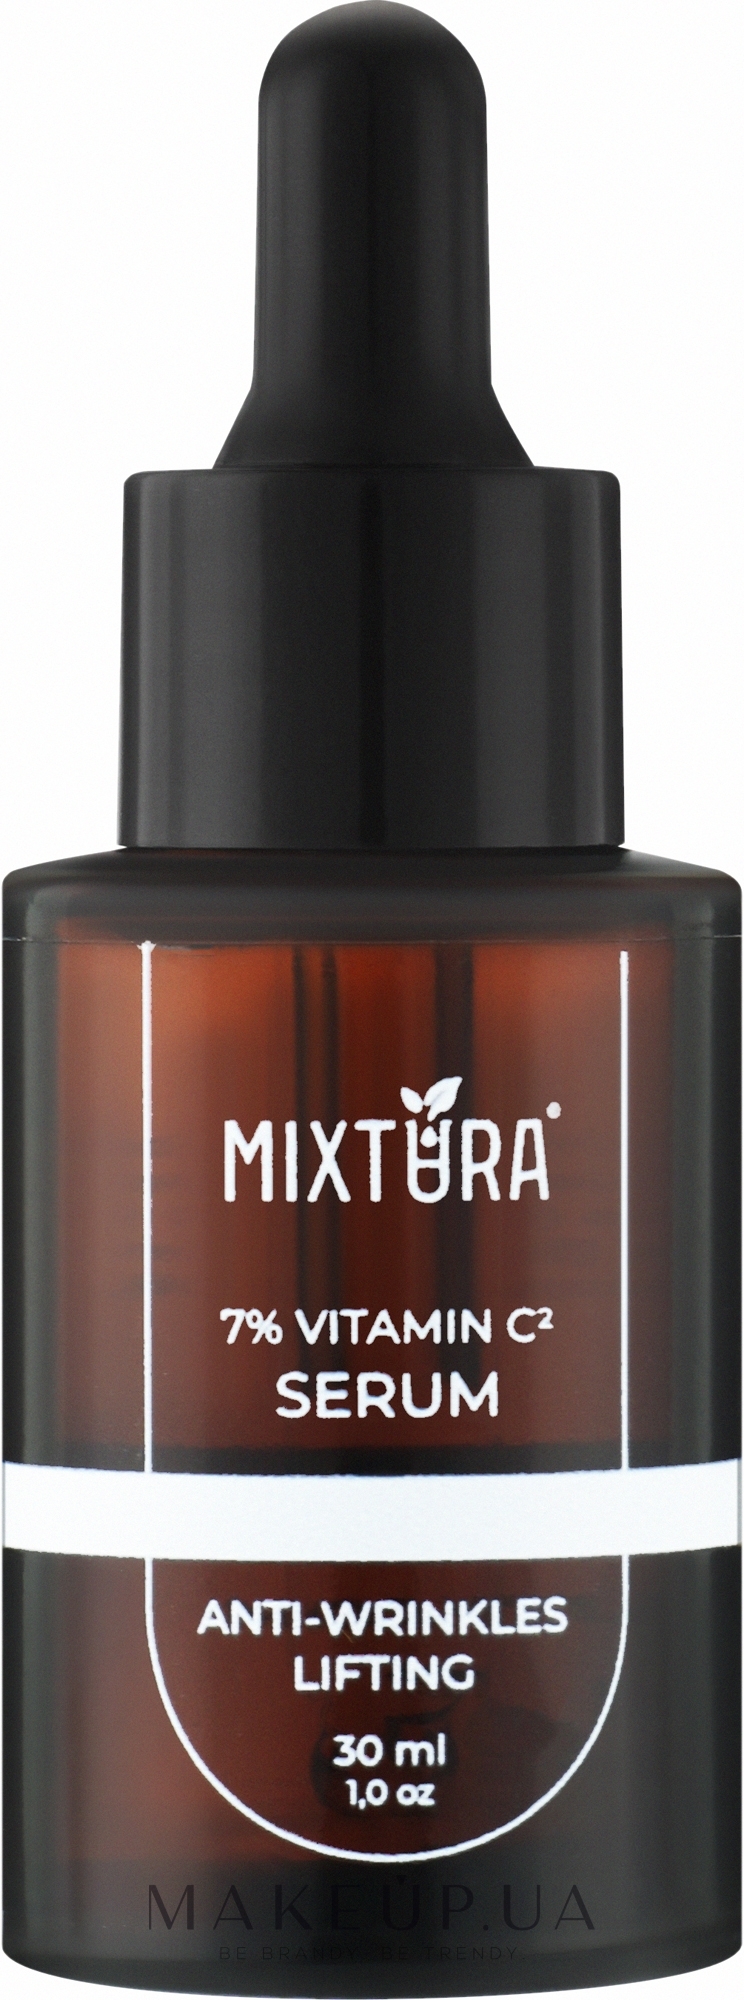 Антиоксидантная сыворотка с витамином С - Mixtura 7% Vitamin C-2 Serum — фото 30ml